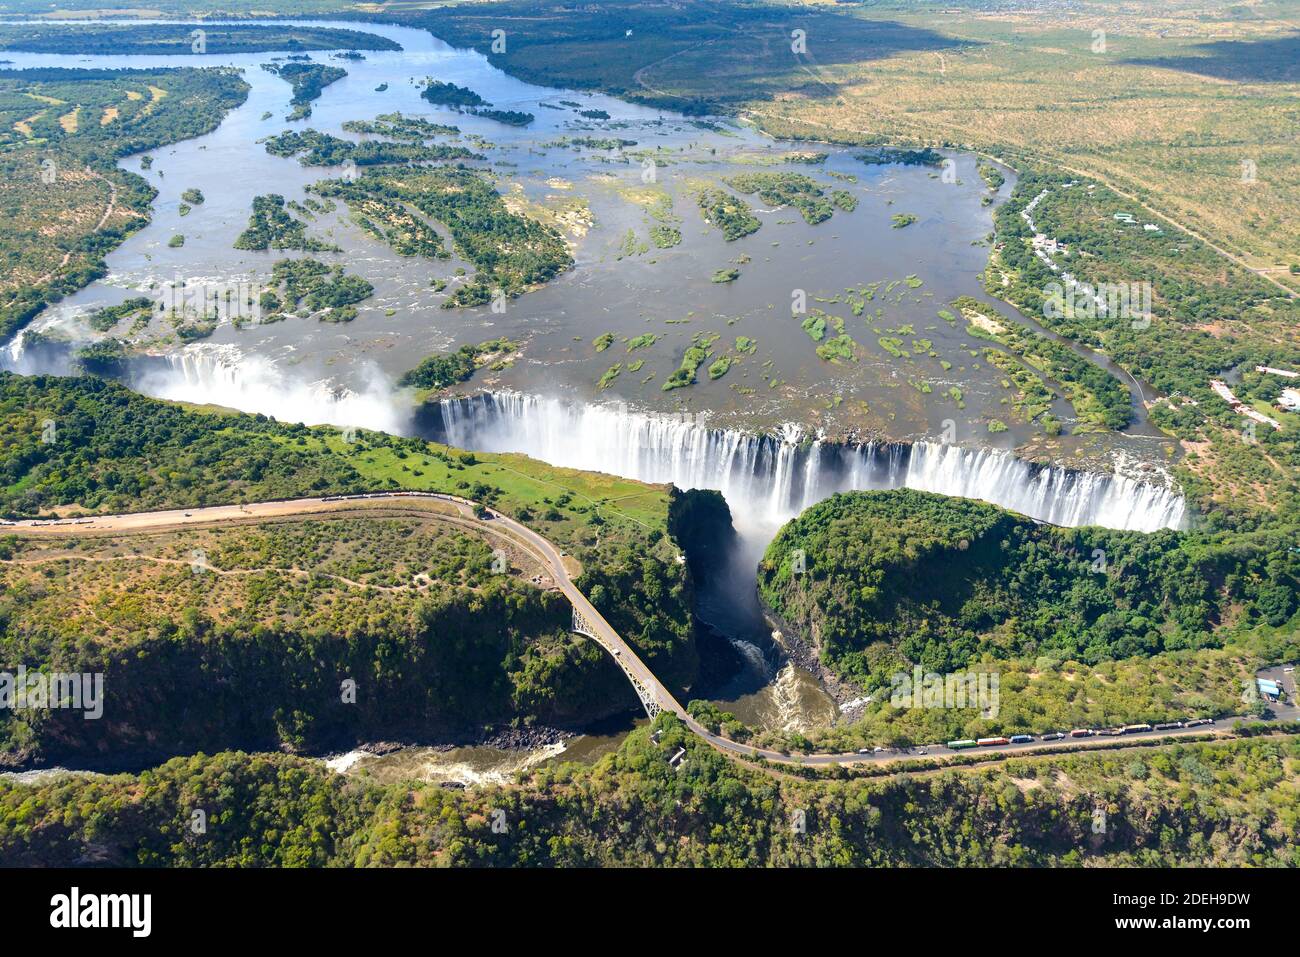 Luftaufnahme der Victoria Falls an der Grenze zwischen Simbabwe und Sambia. Wasserfall vom Zambezi Fluss von oben gesehen. Stockfoto